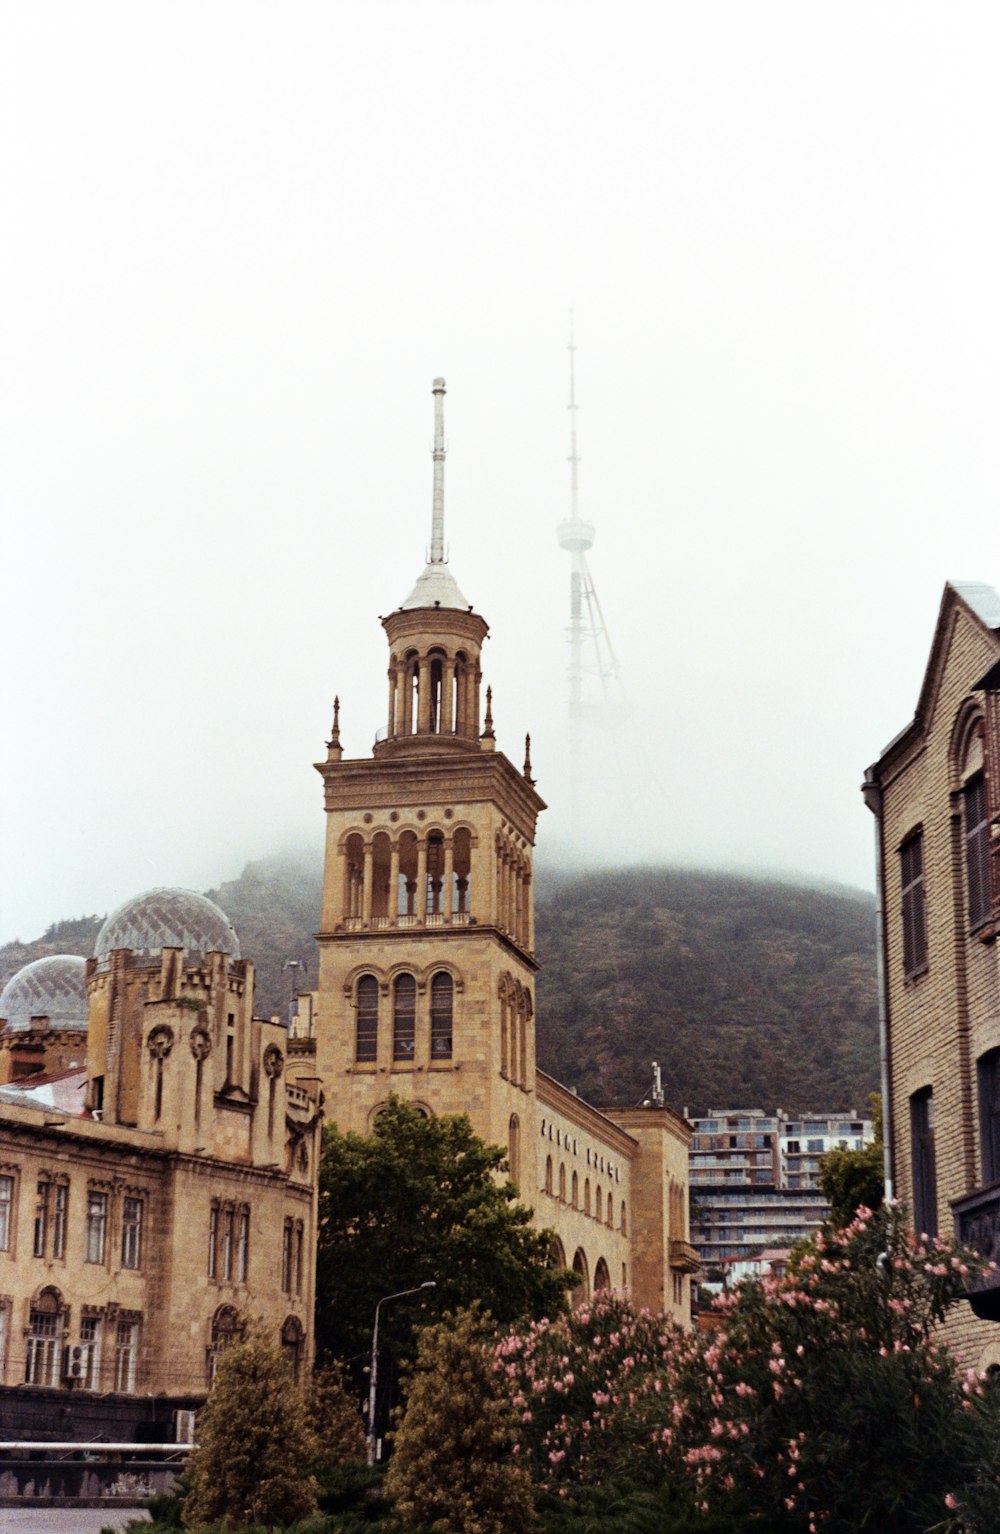 Un edificio alto con una torre del reloj en la parte superior